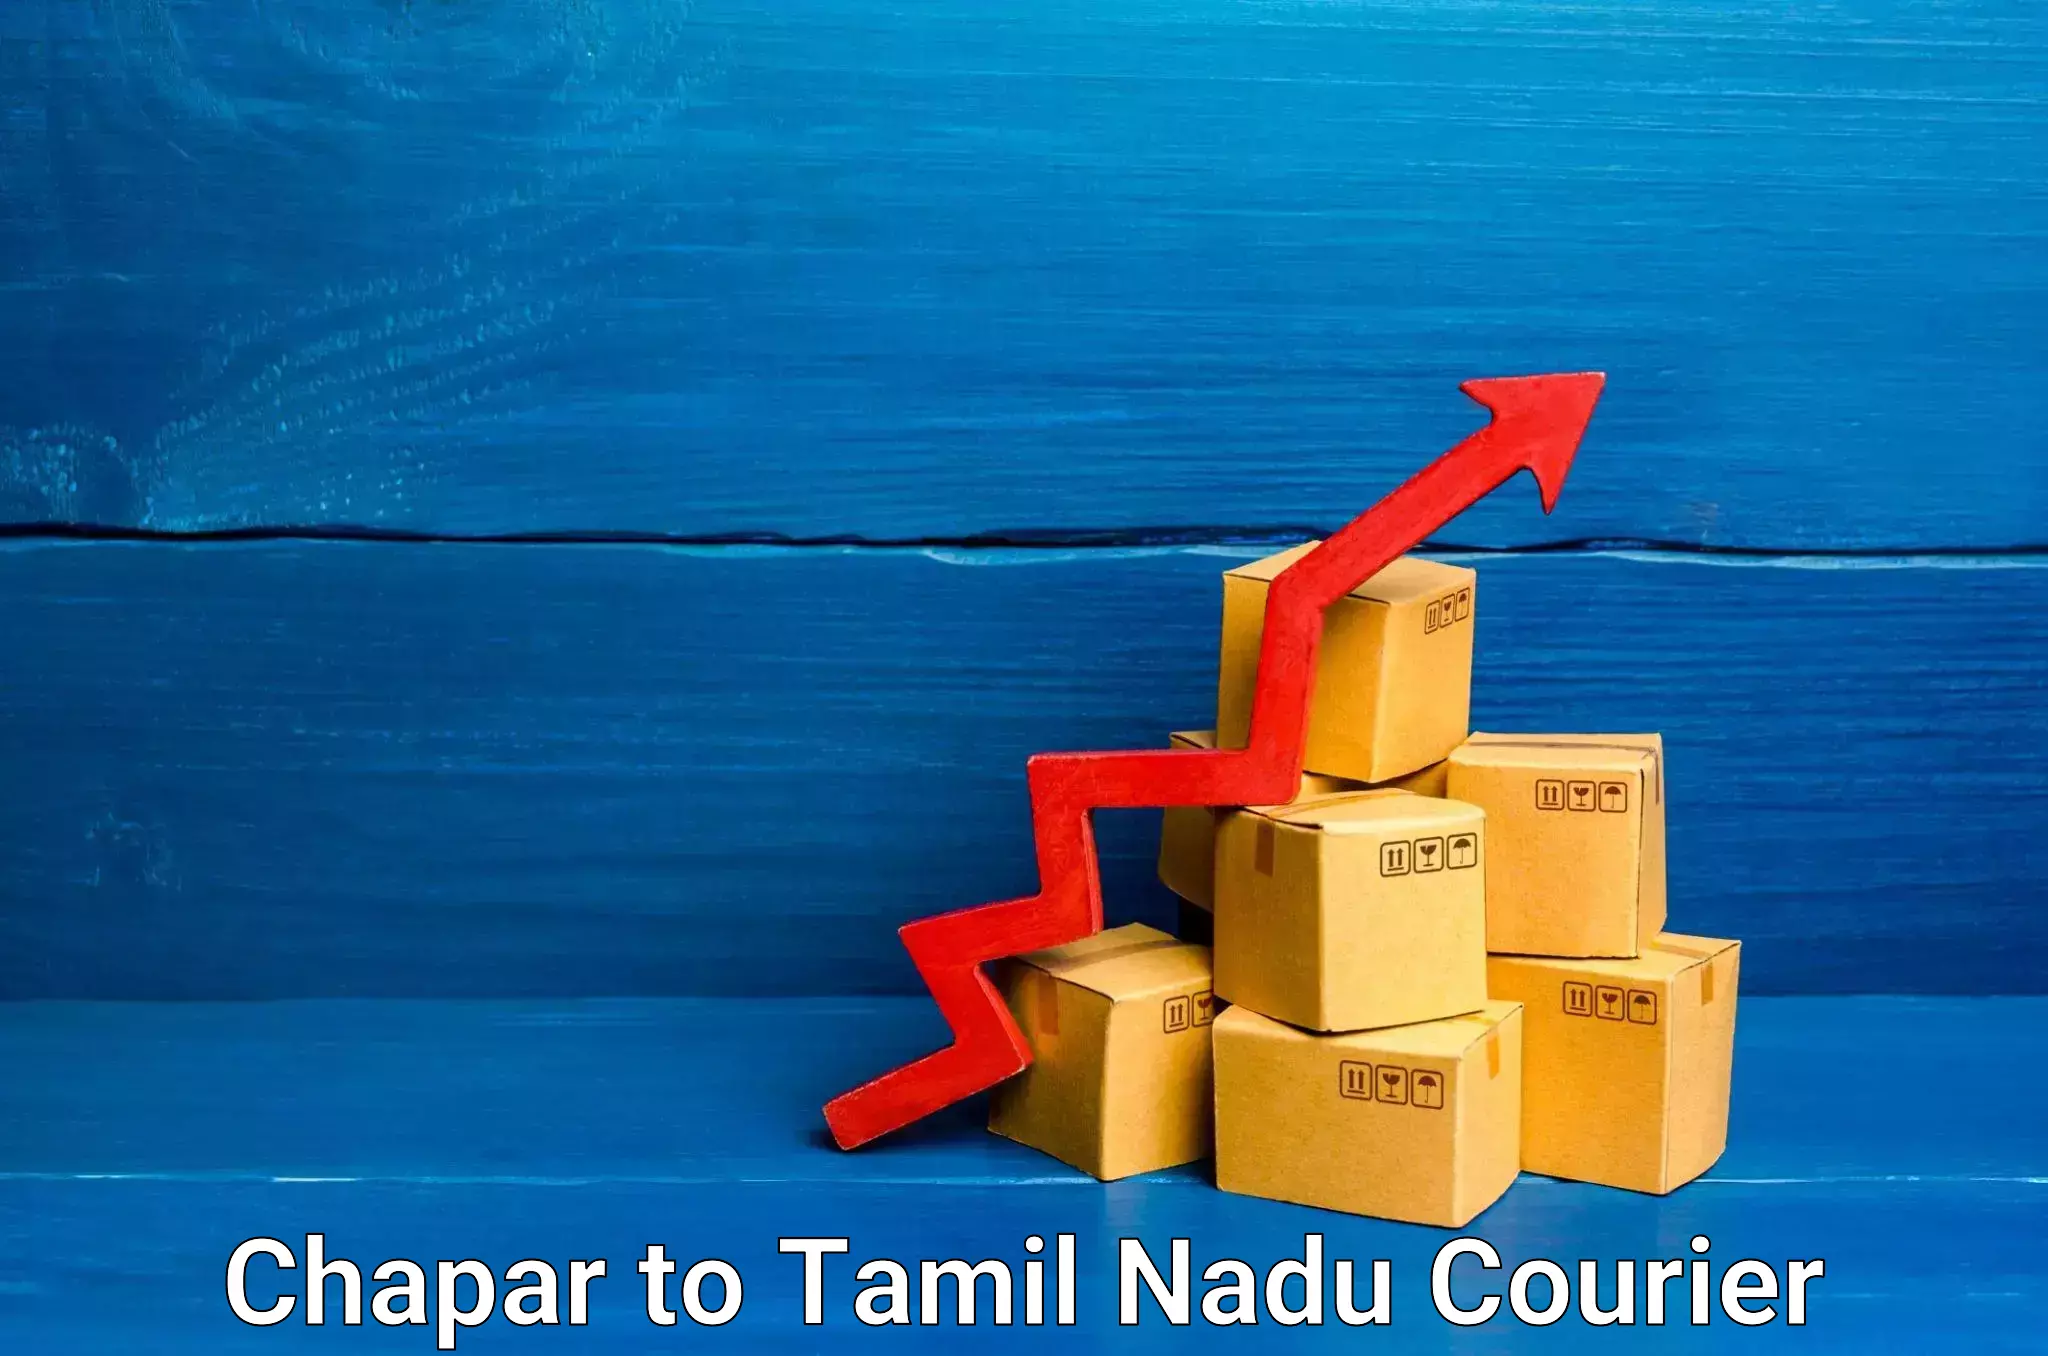 24/7 courier service Chapar to Tamil Nadu